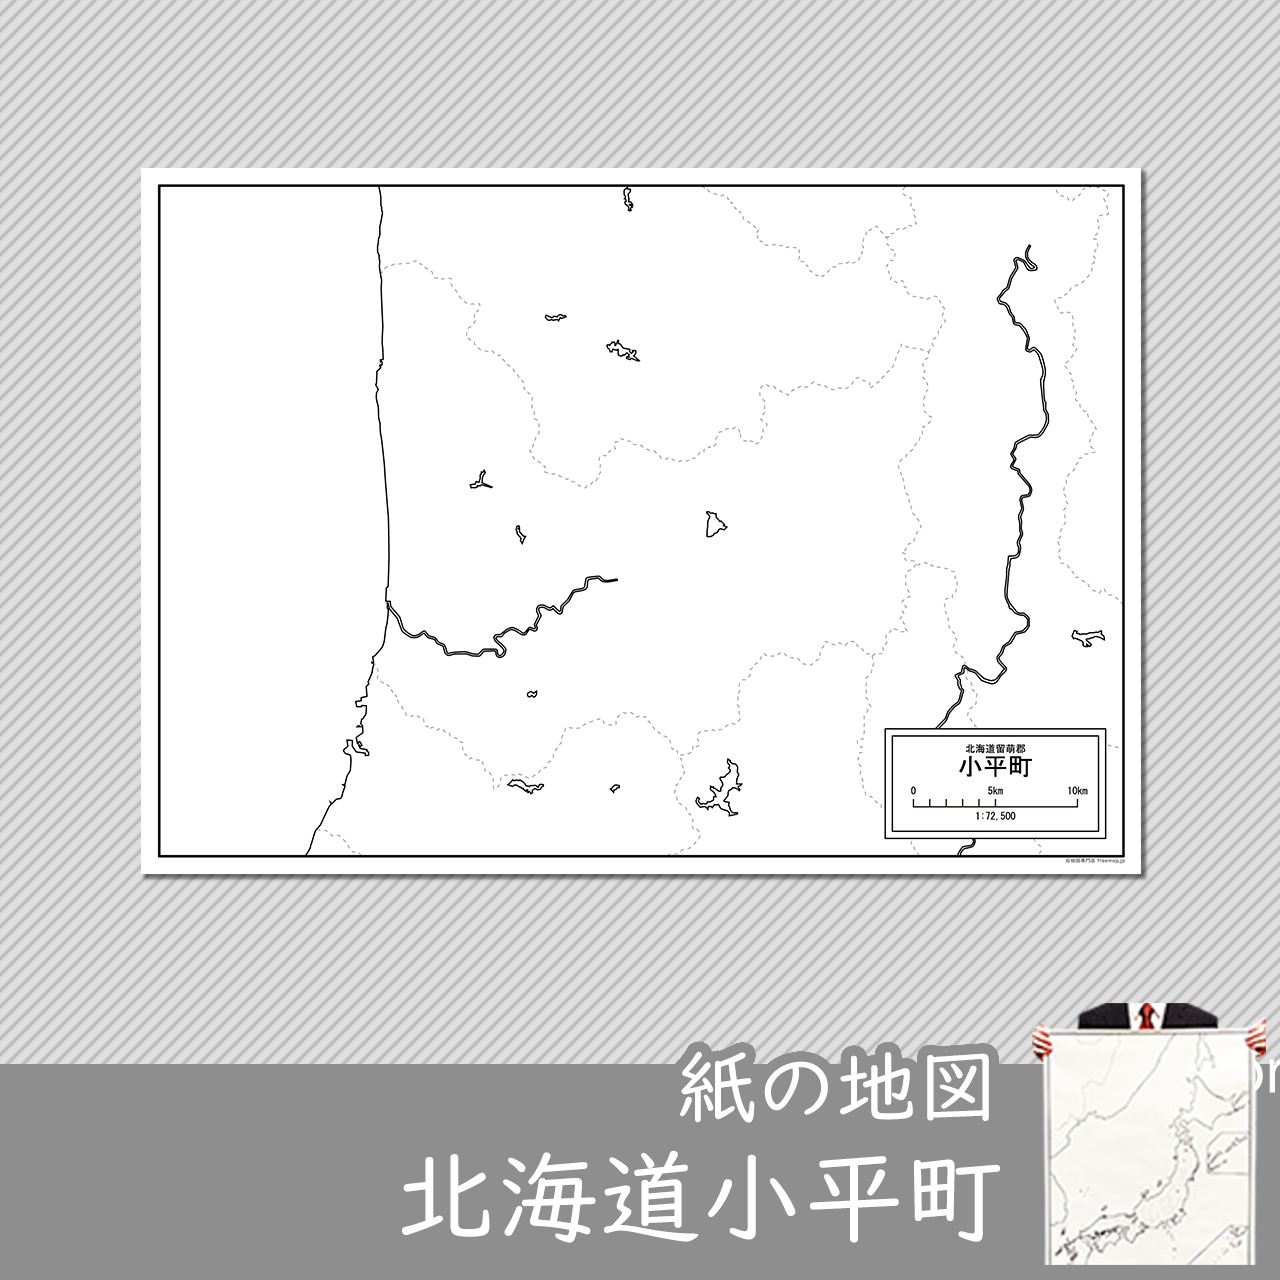 小平町の紙の白地図のサムネイル